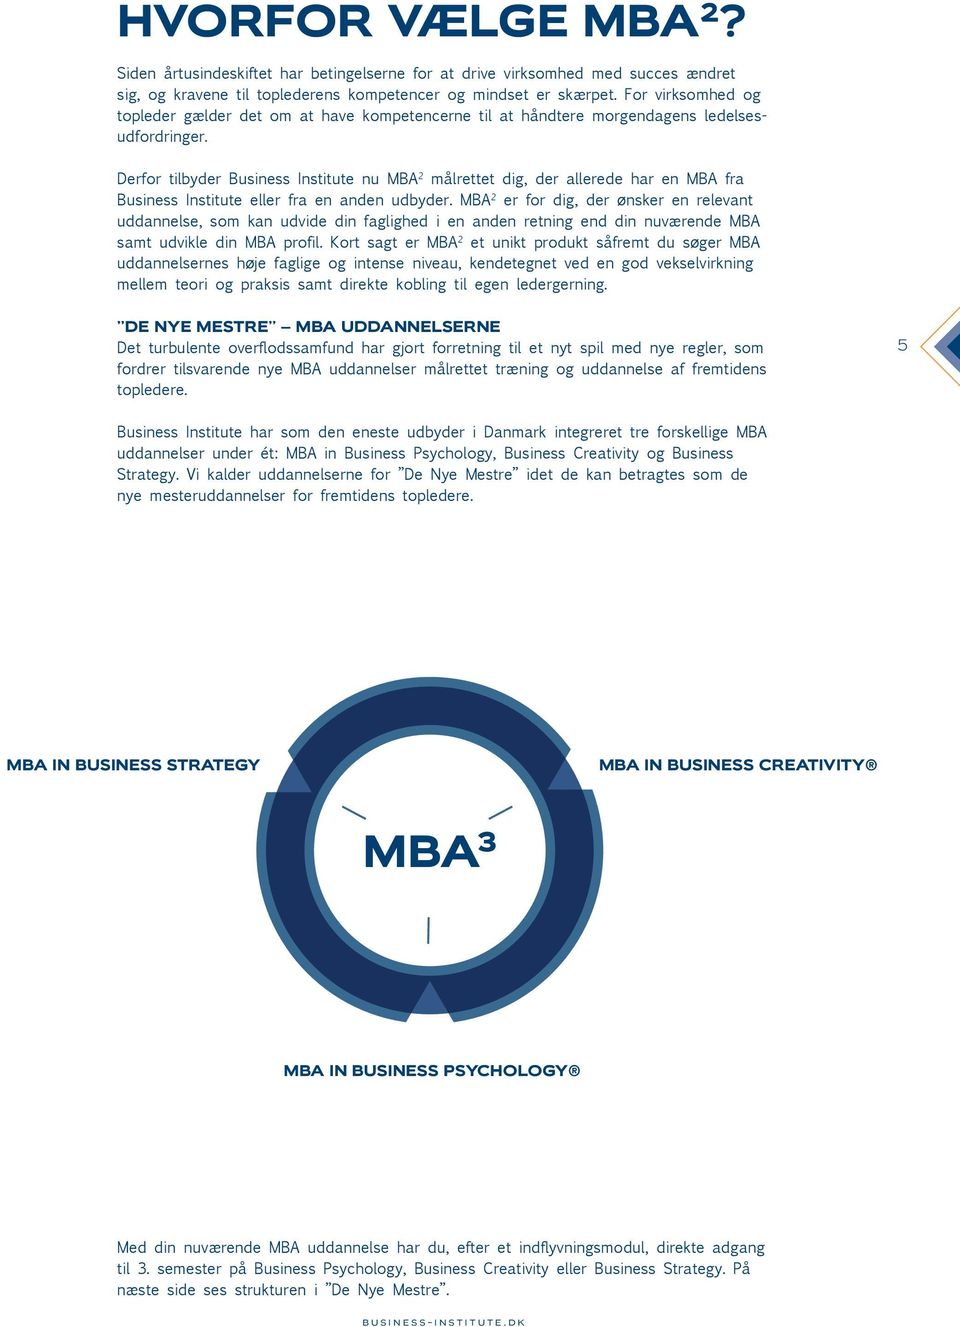 Derfor tilbyder Business Institute nu MBA 2 målrettet dig, der allerede har en MBA fra Business Institute eller fra en anden udbyder.